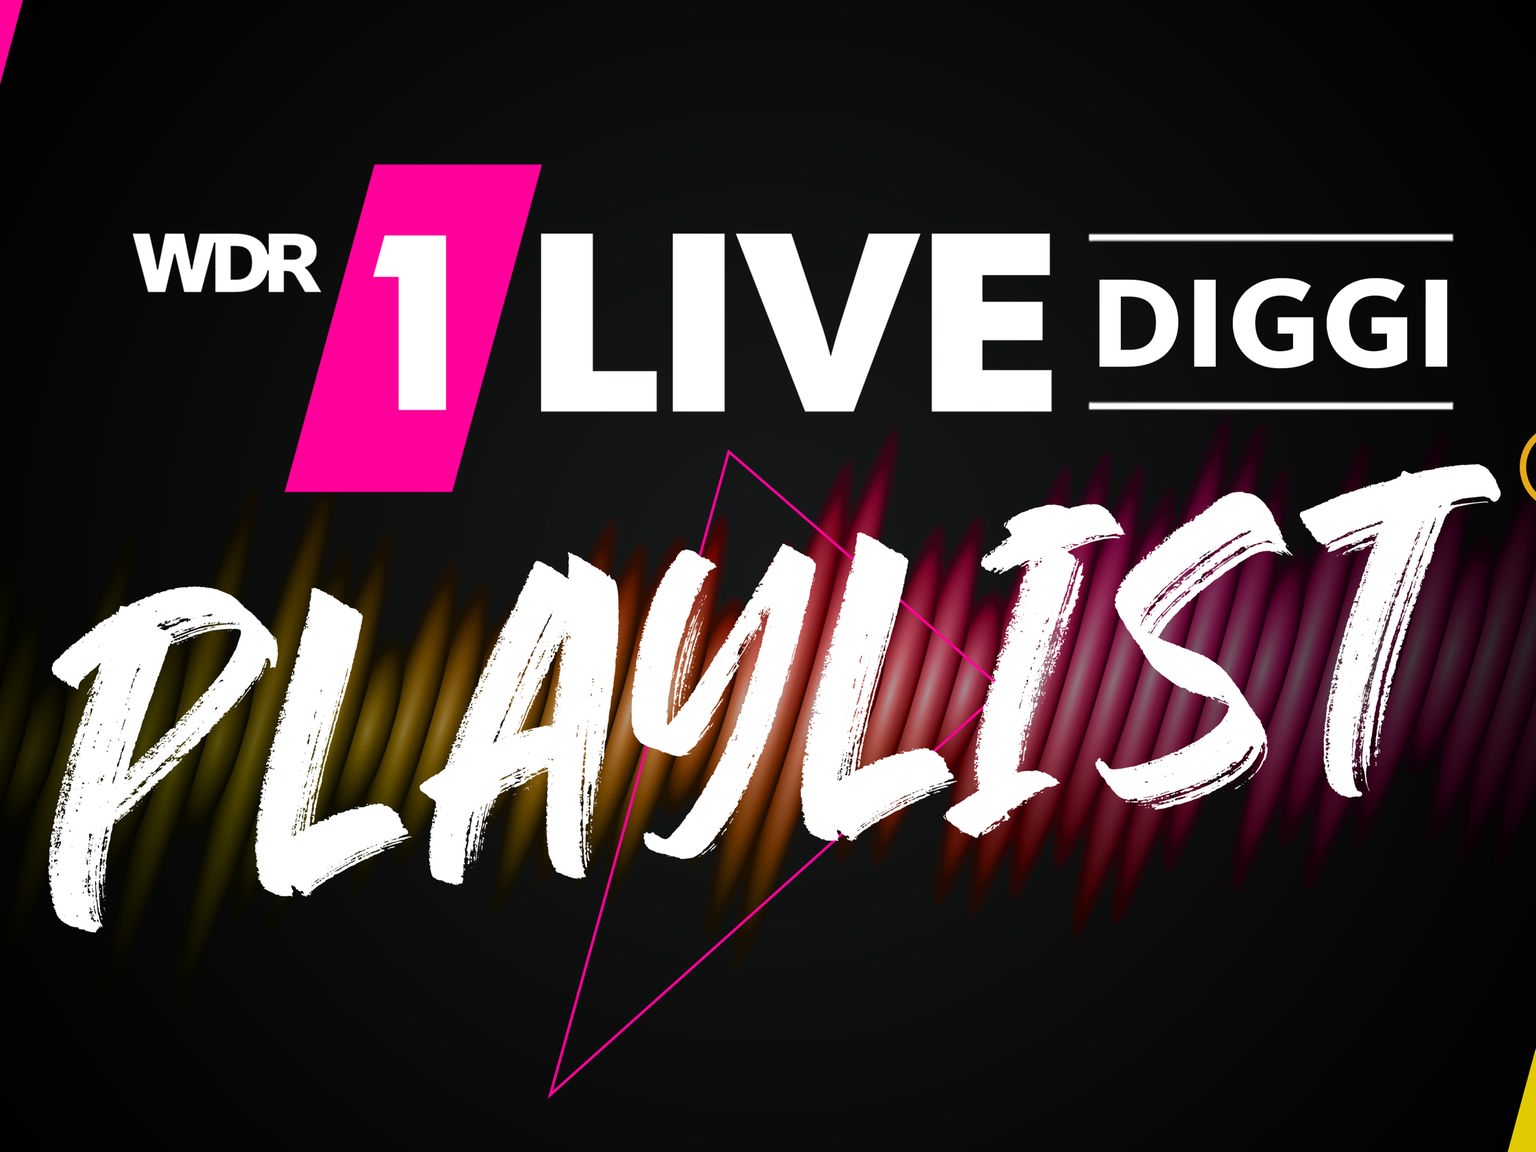 Die DIGGI-Playlist, Titelsuche und die letzten Songs - Playlist - On Air - 1LIVE DIGGI - Radio